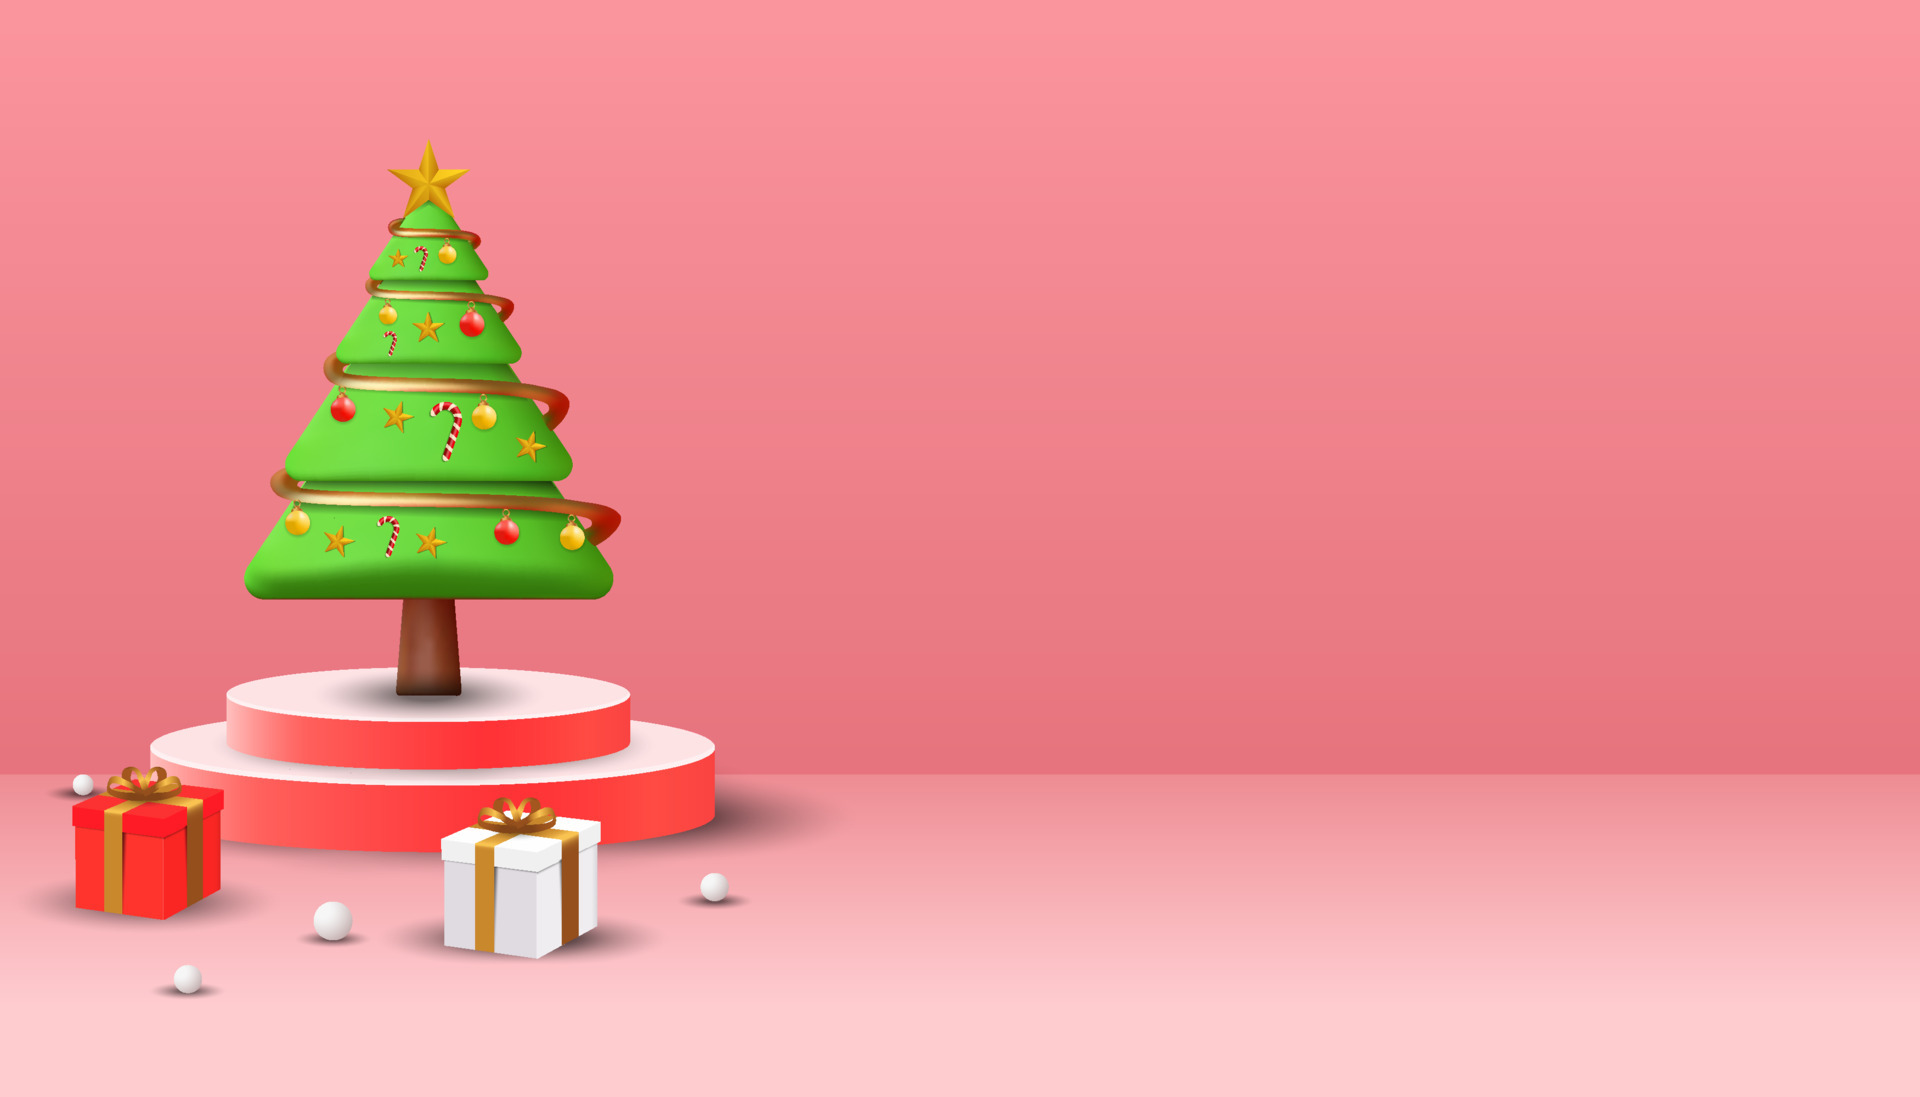 Tận hưởng không gian Giáng sinh với phông nền chúc mừng với cây thông Giáng sinh 3D trên bục. Với sự kết hợp giữa phông nền Giáng sinh và cây thông Giáng sinh 3D, hơi thở lễ hội vào không gian của bạn một cách dễ dàng và tốt đẹp nhất.